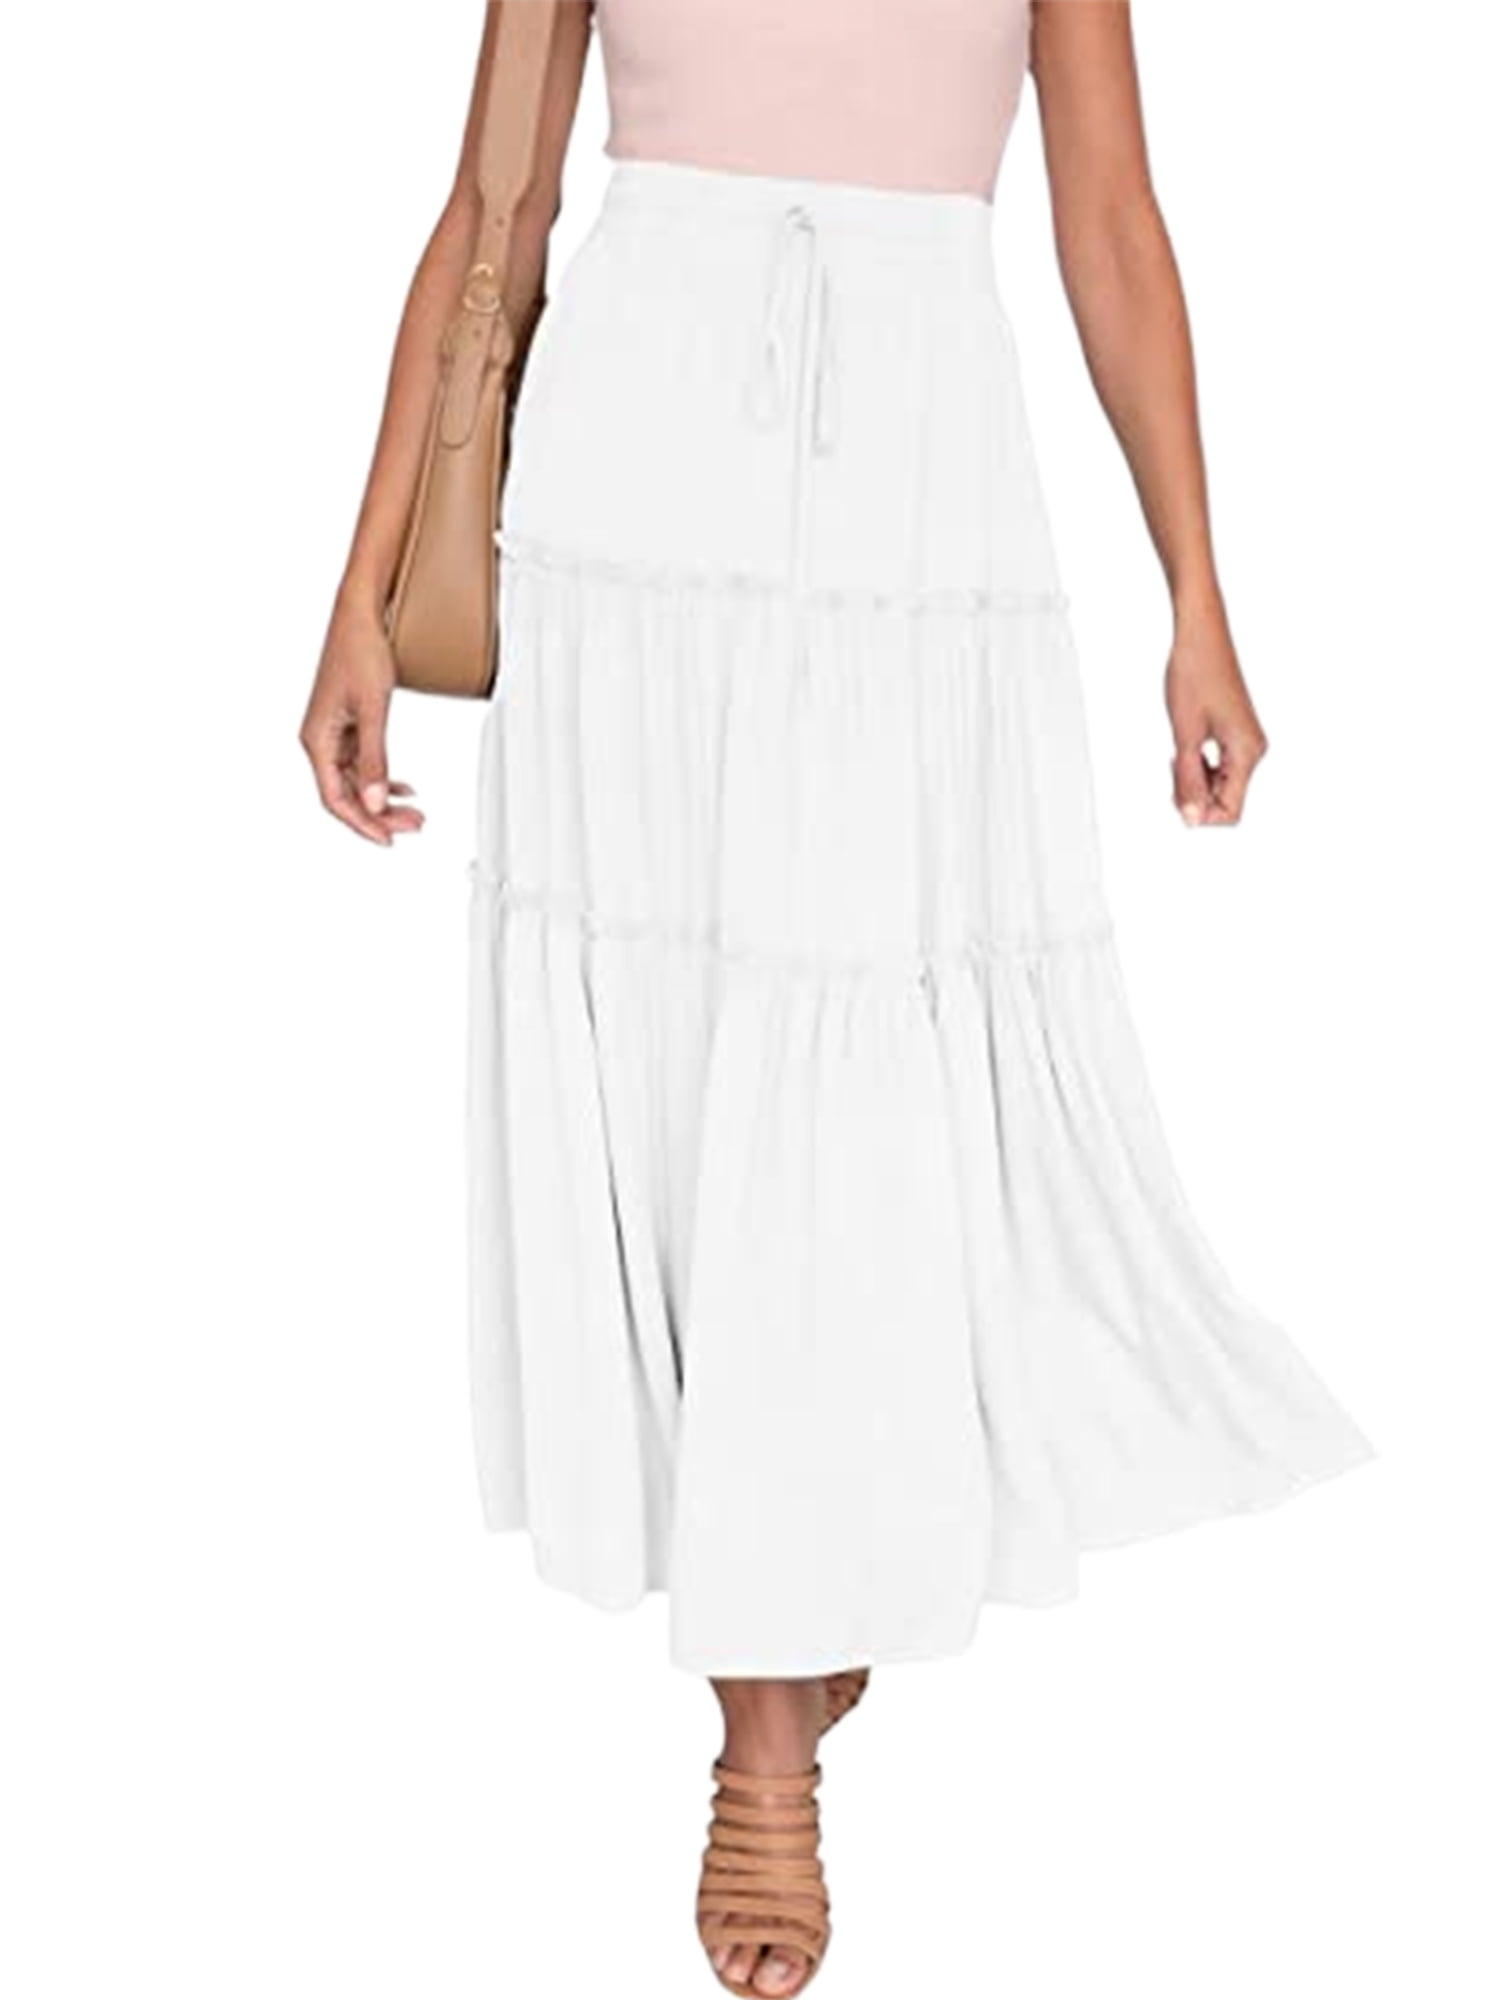 White maxi skirts on Pinterest